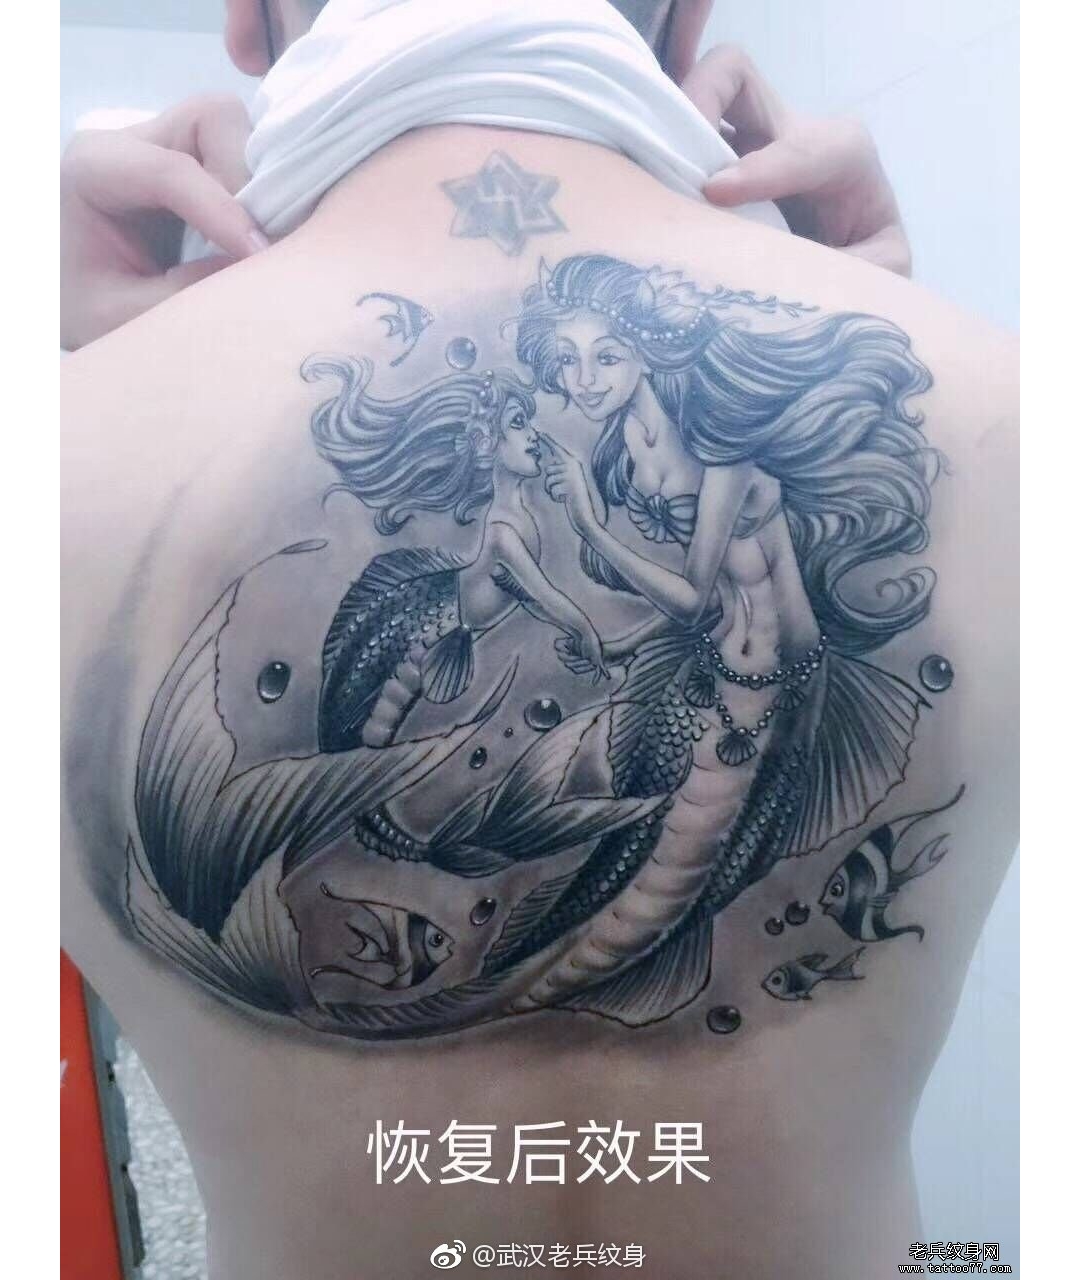 背部美人鱼纹身图案作品恢复后效果